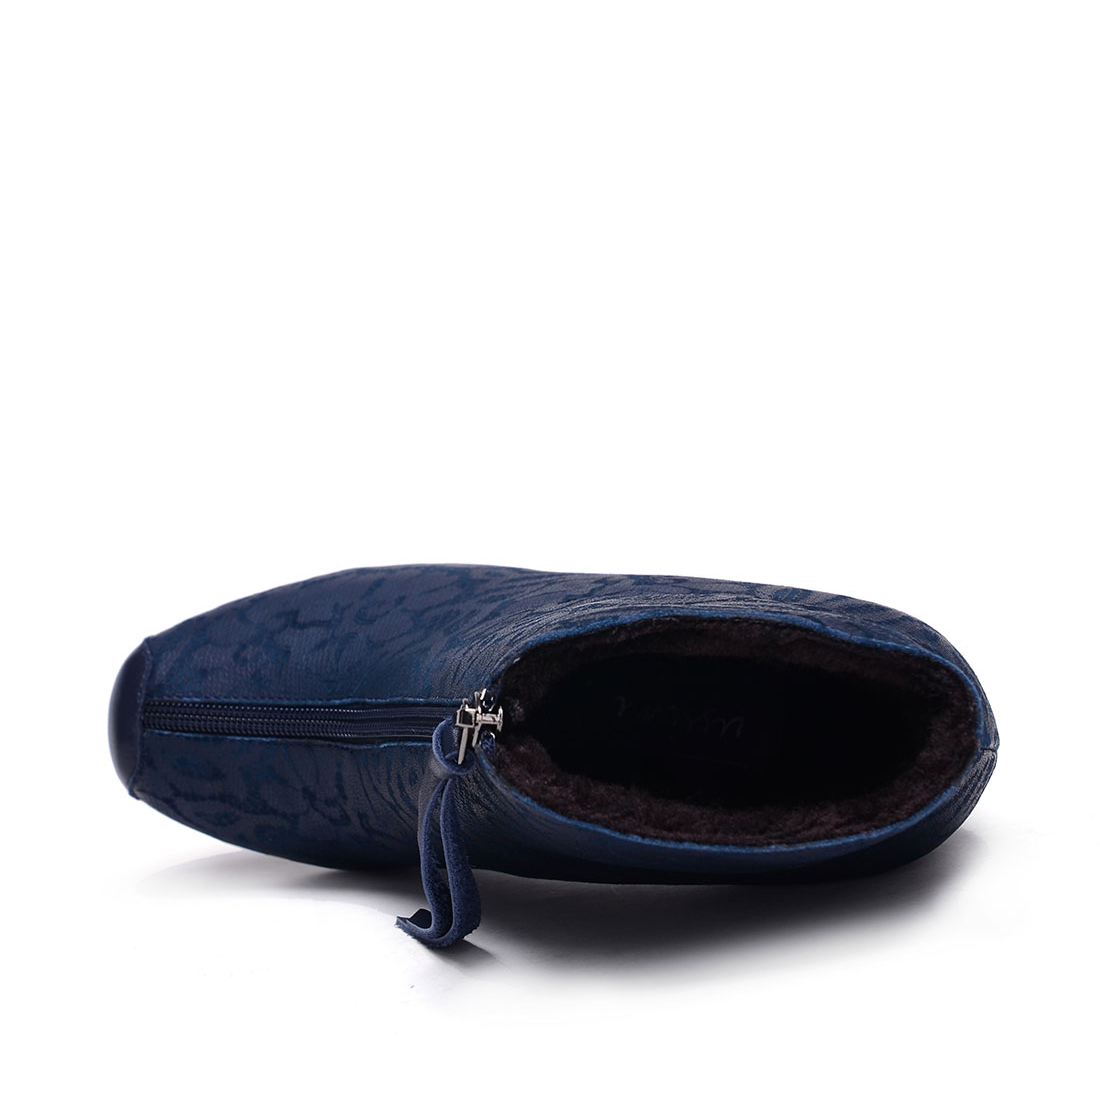 [USSIMI]欧美风拉链进口特殊面料踝靴(棉)(尺码标准)
编号：A0208R1A88